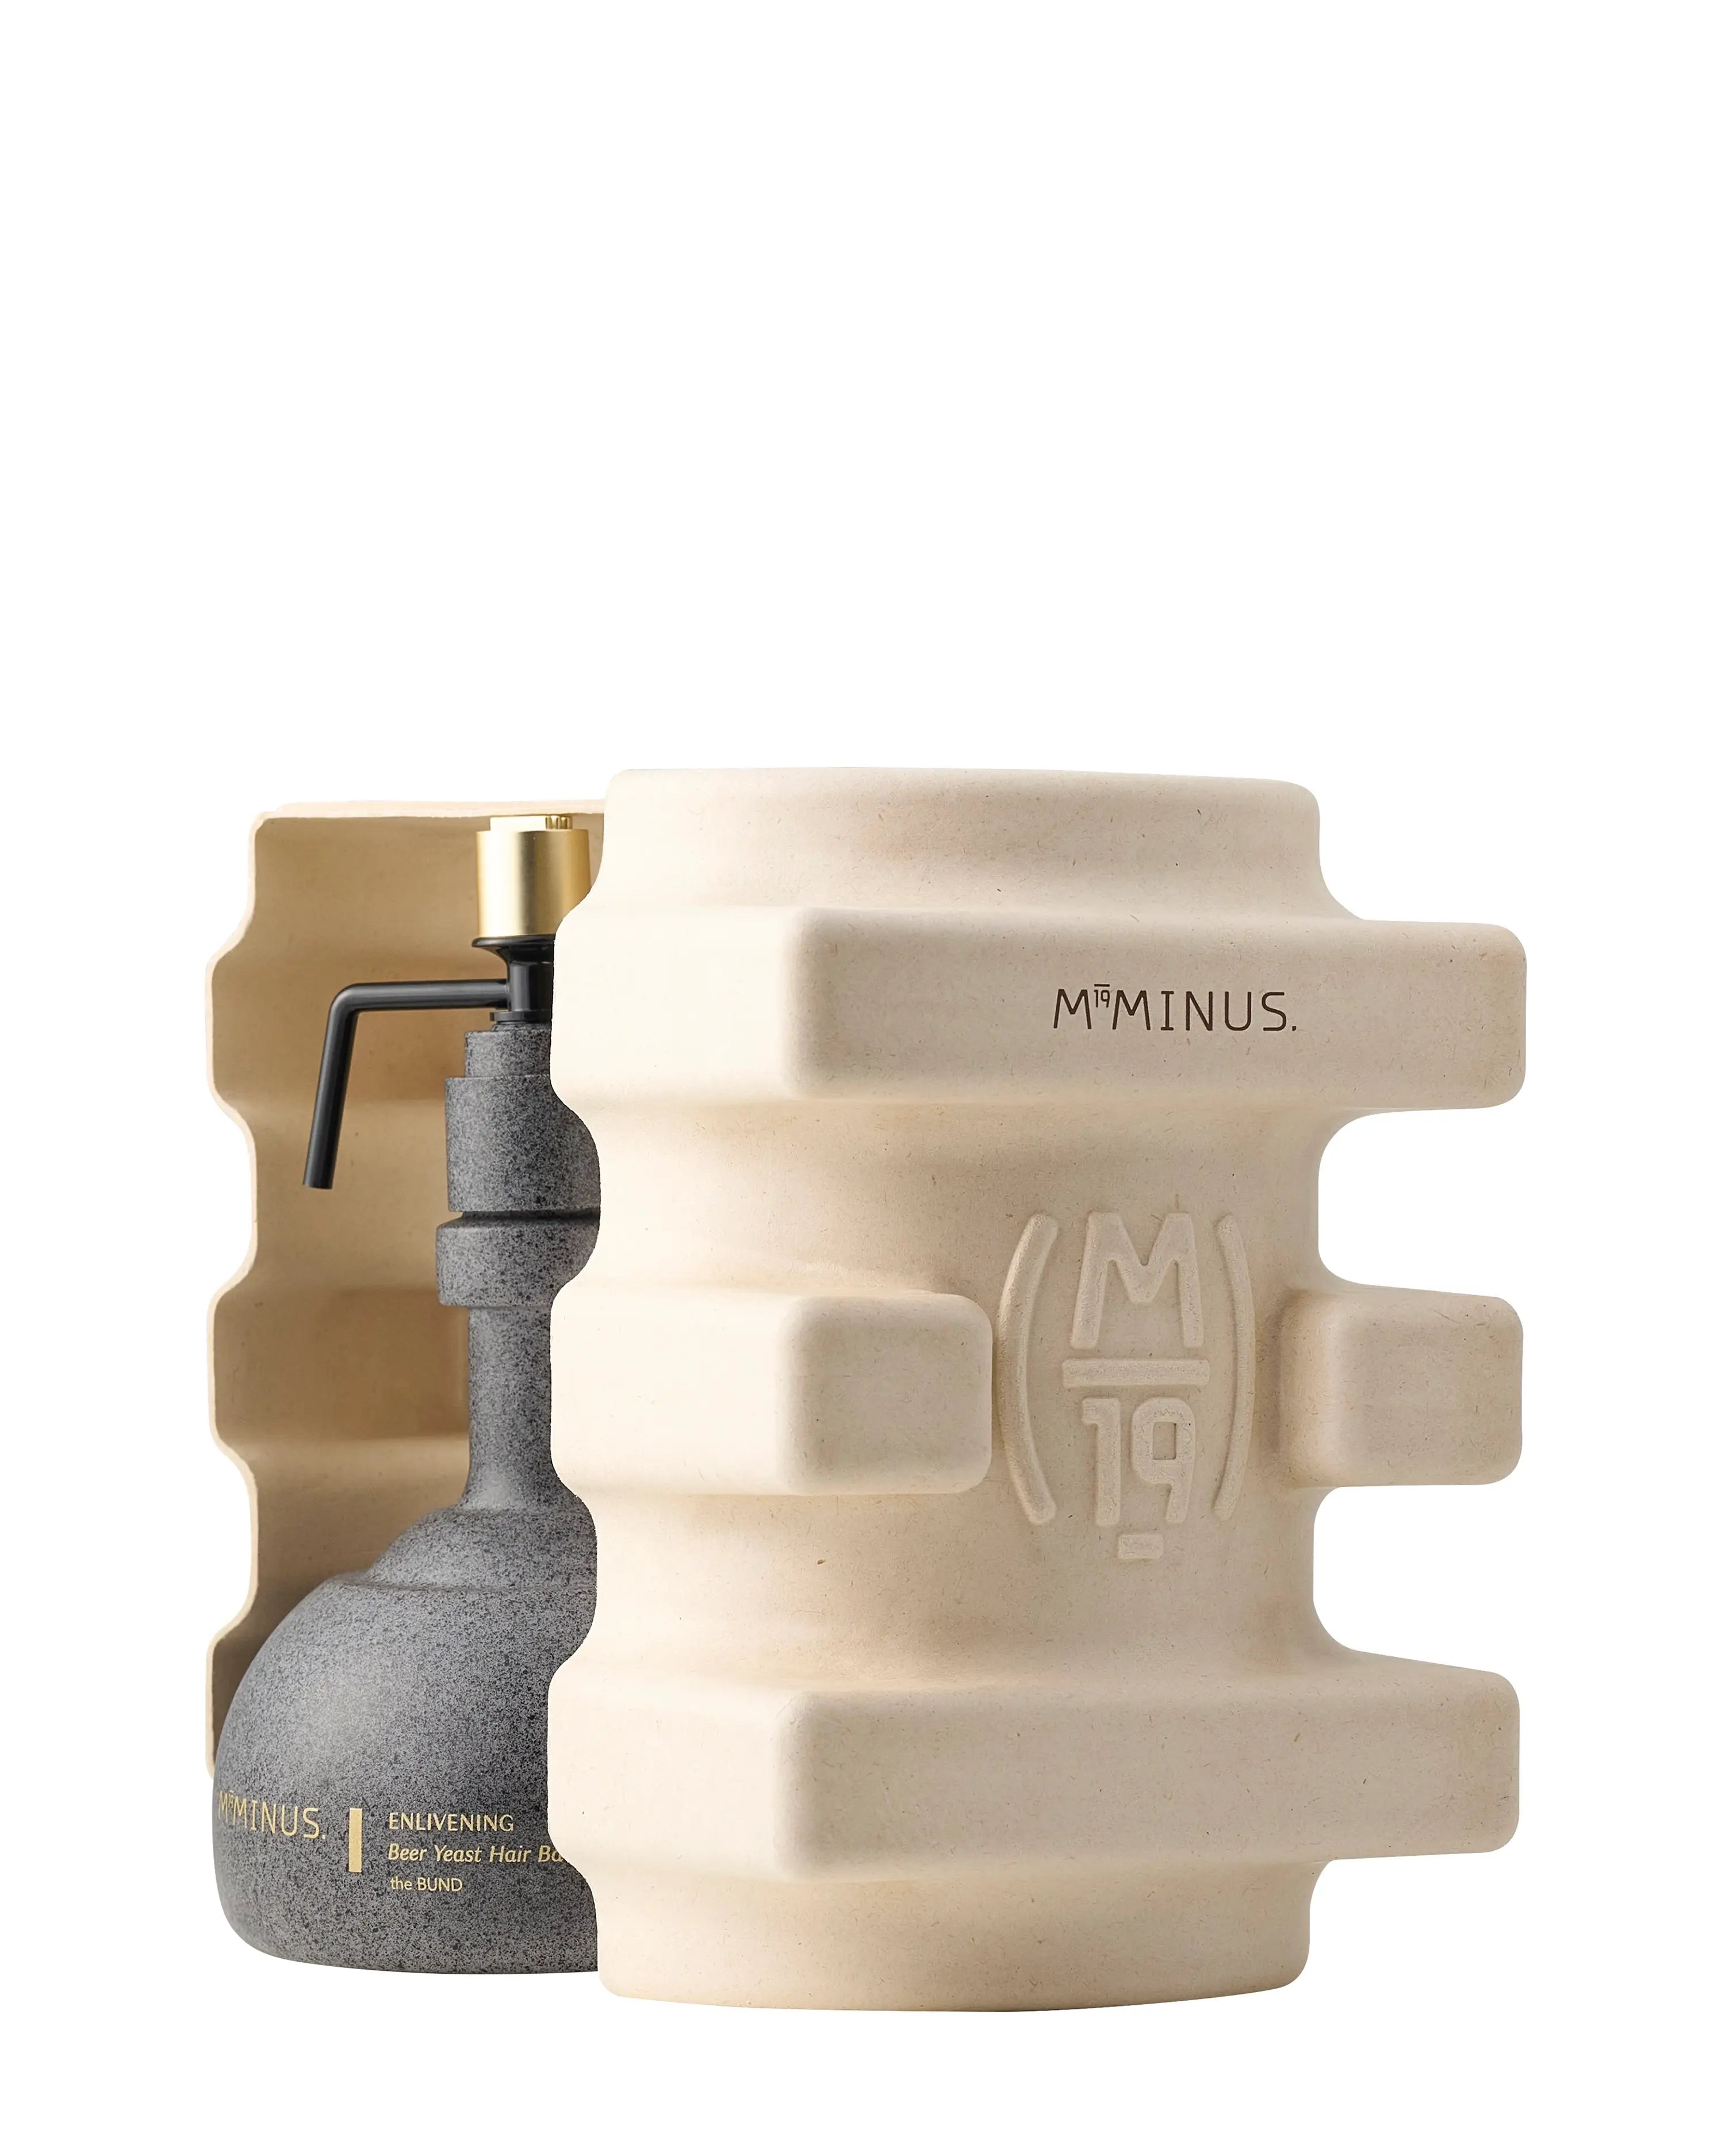 M19Minus the BUND - I Enlivening Beer Yeast Hair Bath - Shampoo